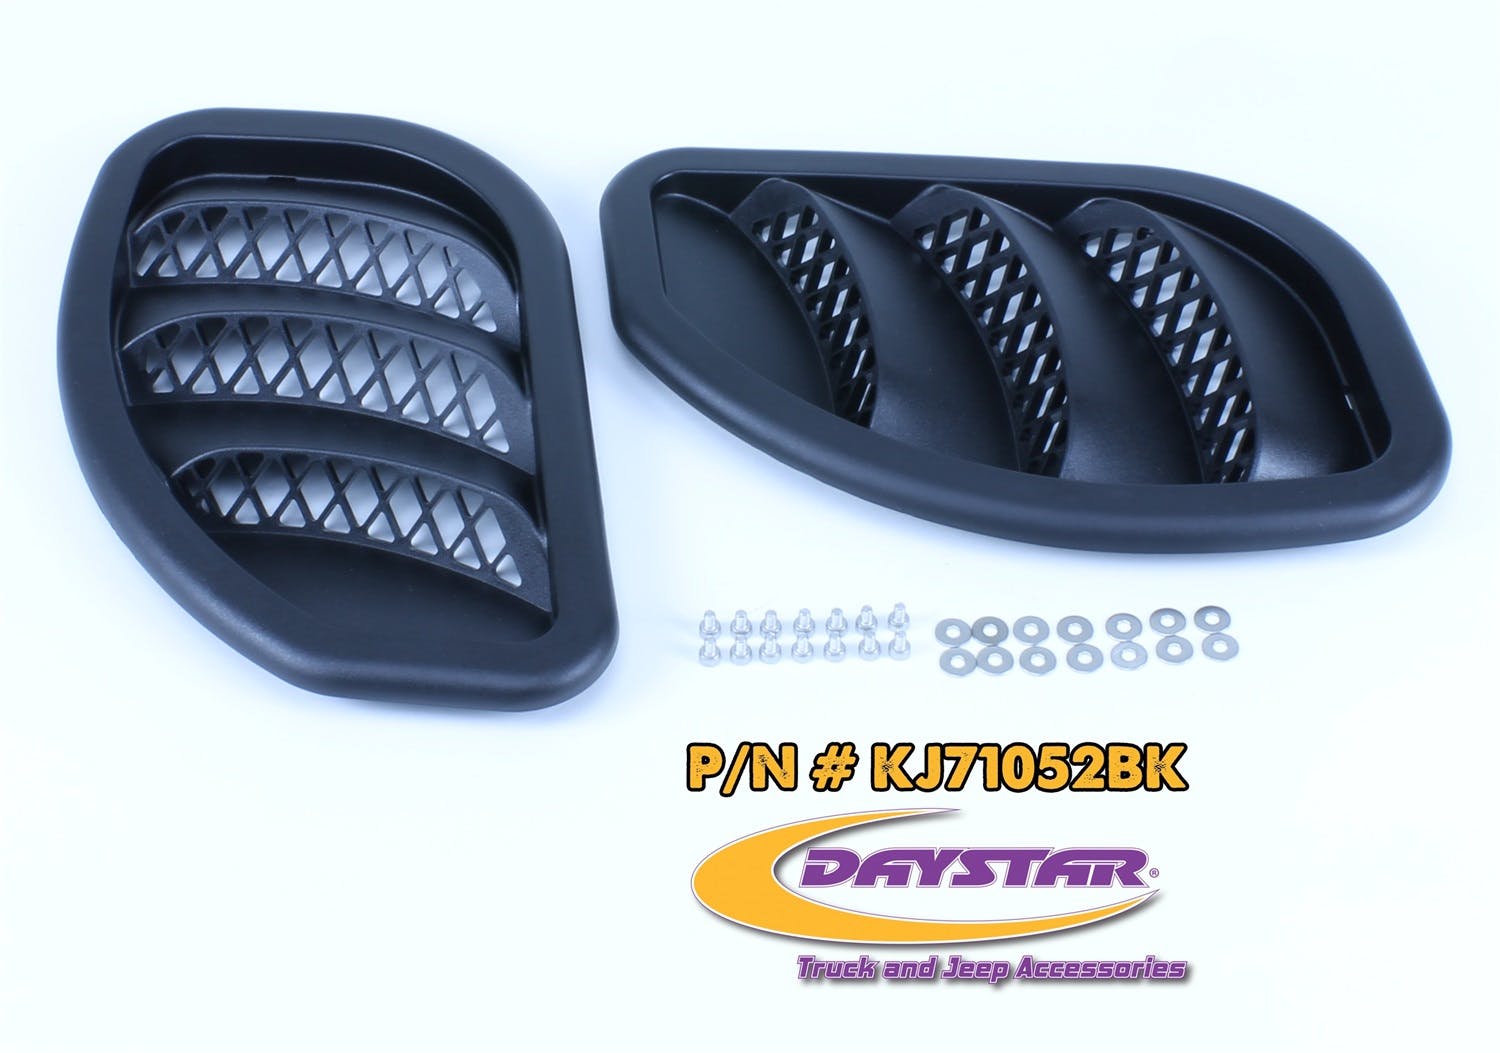 Daystar KJ71052BK Side Hood Vent Kit; Black (Pair)